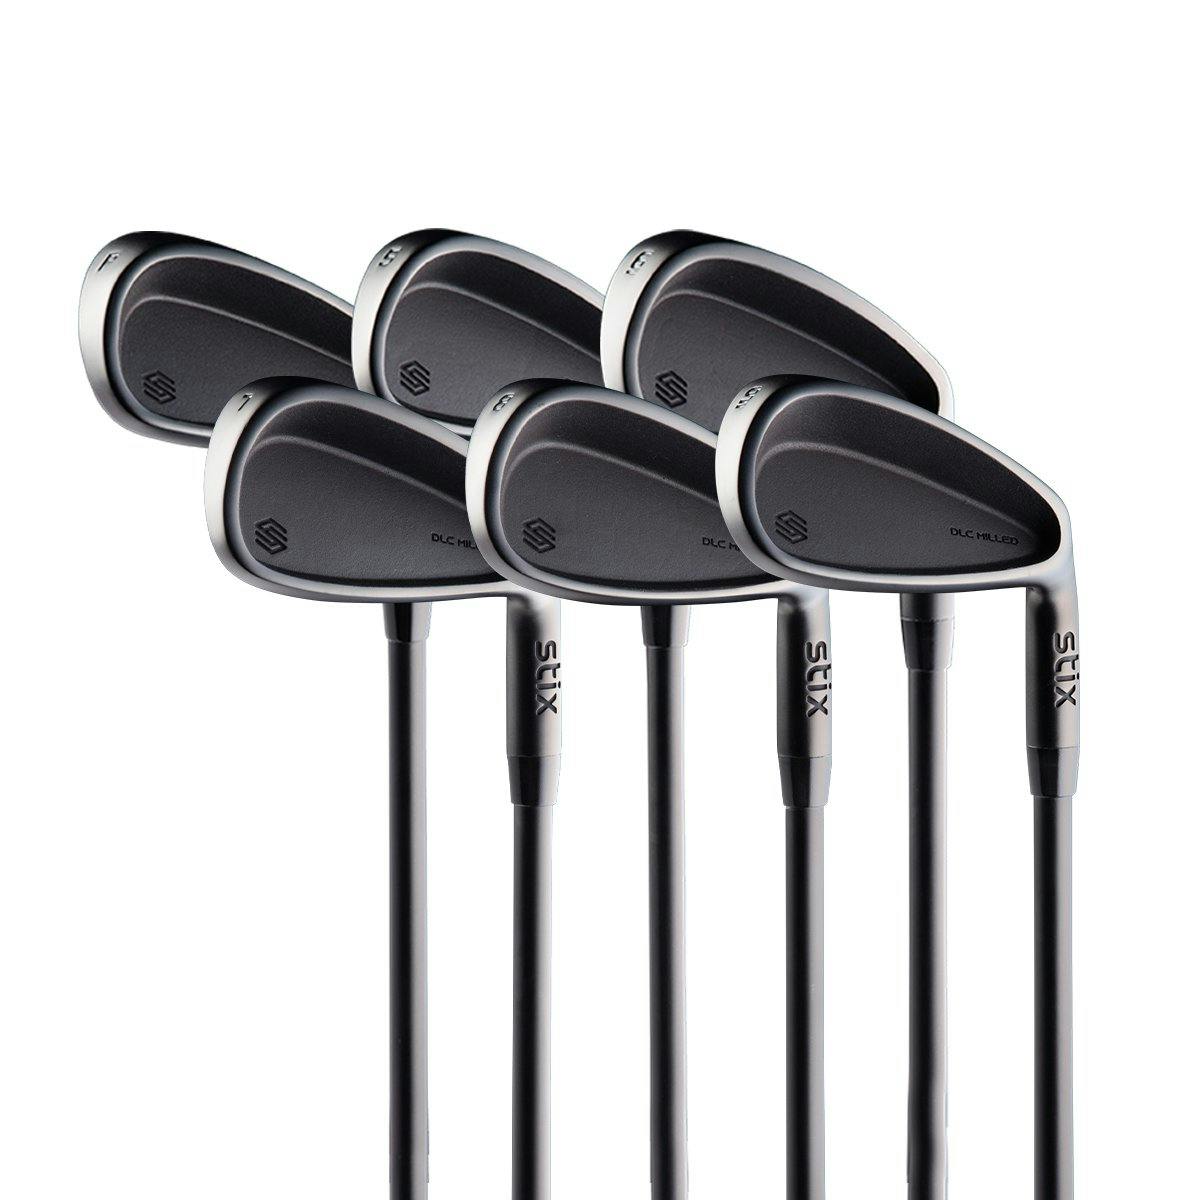 Stix Golf Iron Set · Left handed · Graphite · Stiff · 5-PW